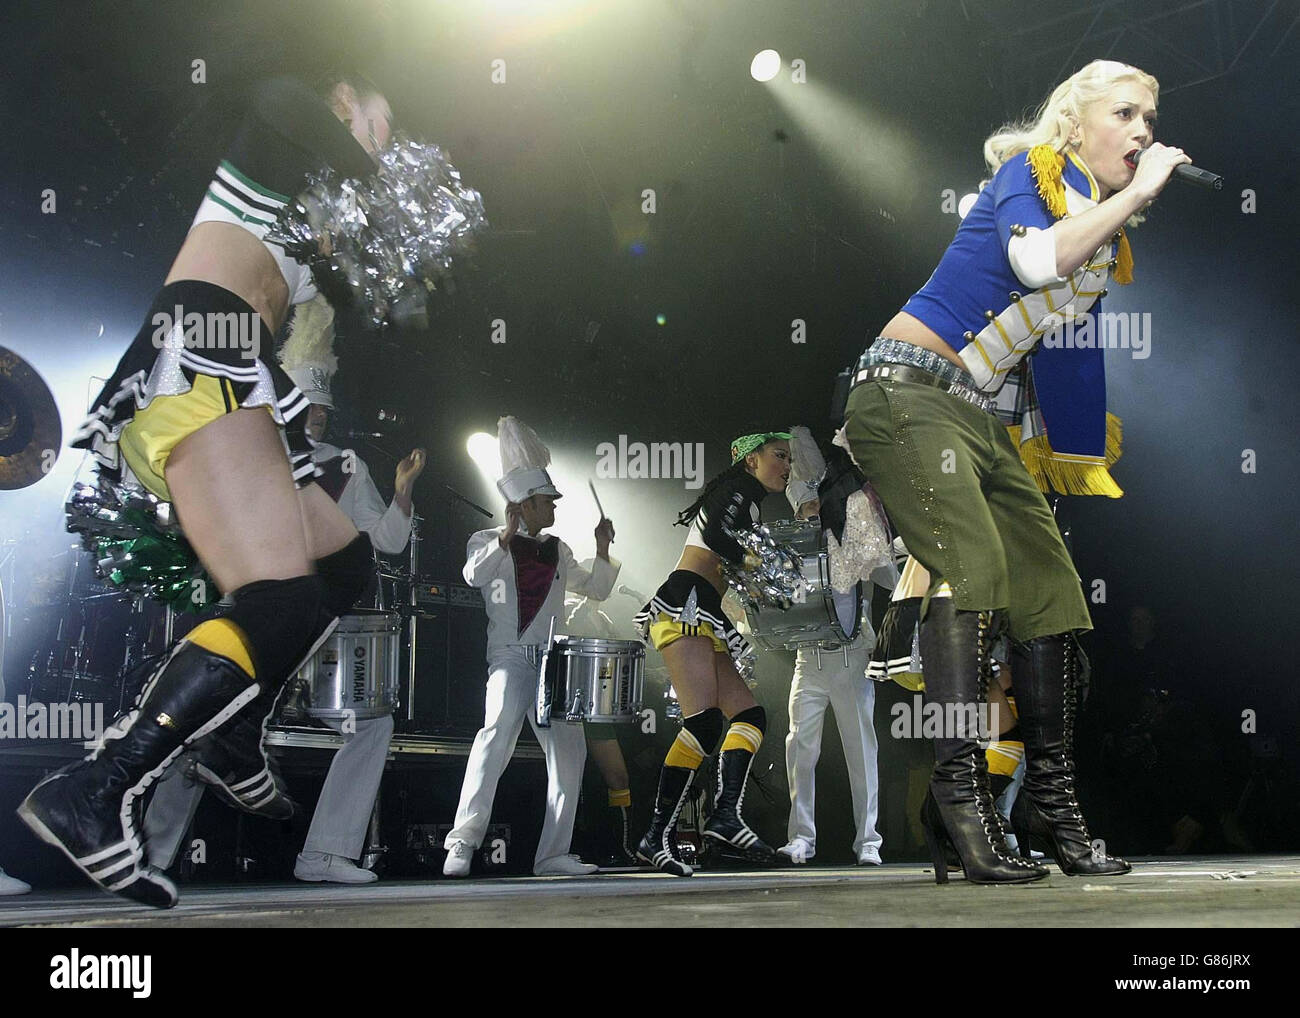 Le Big Weekend de radio 1 - Herrington Park. Gwen Stefani sur scène. Banque D'Images